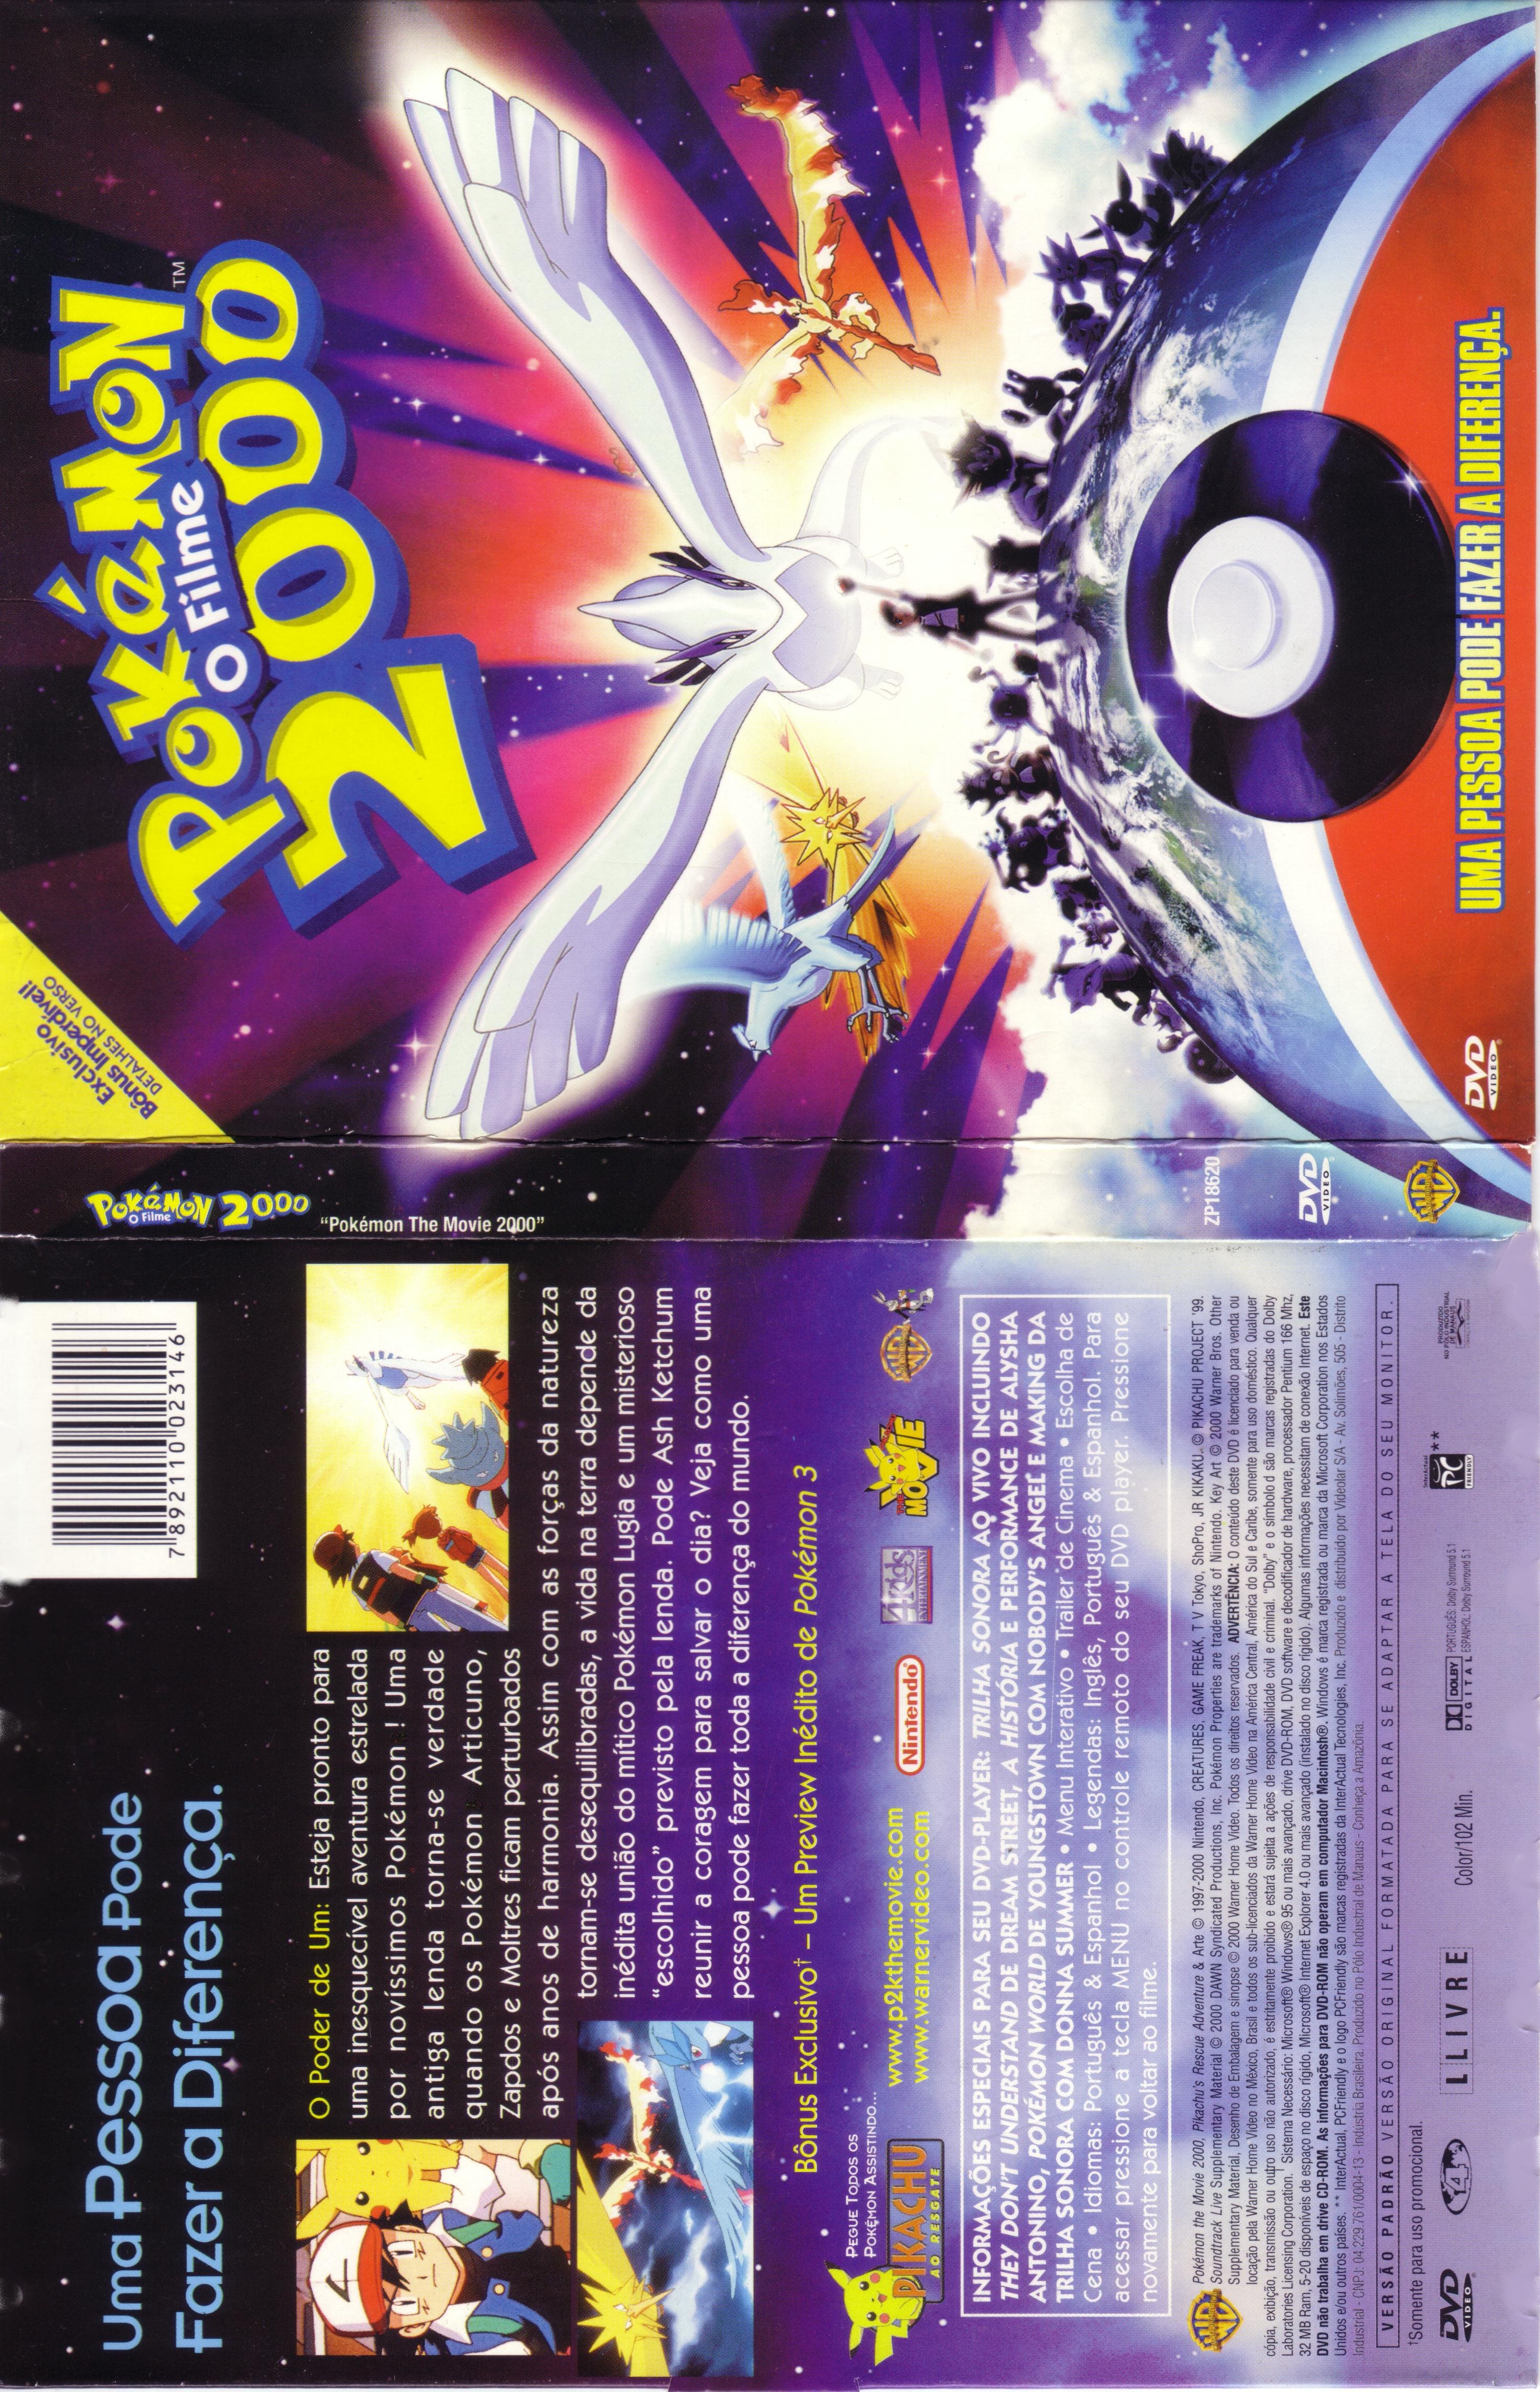  DVD Pokémon 2000 O Filme [ Pokémon The Movie 2000